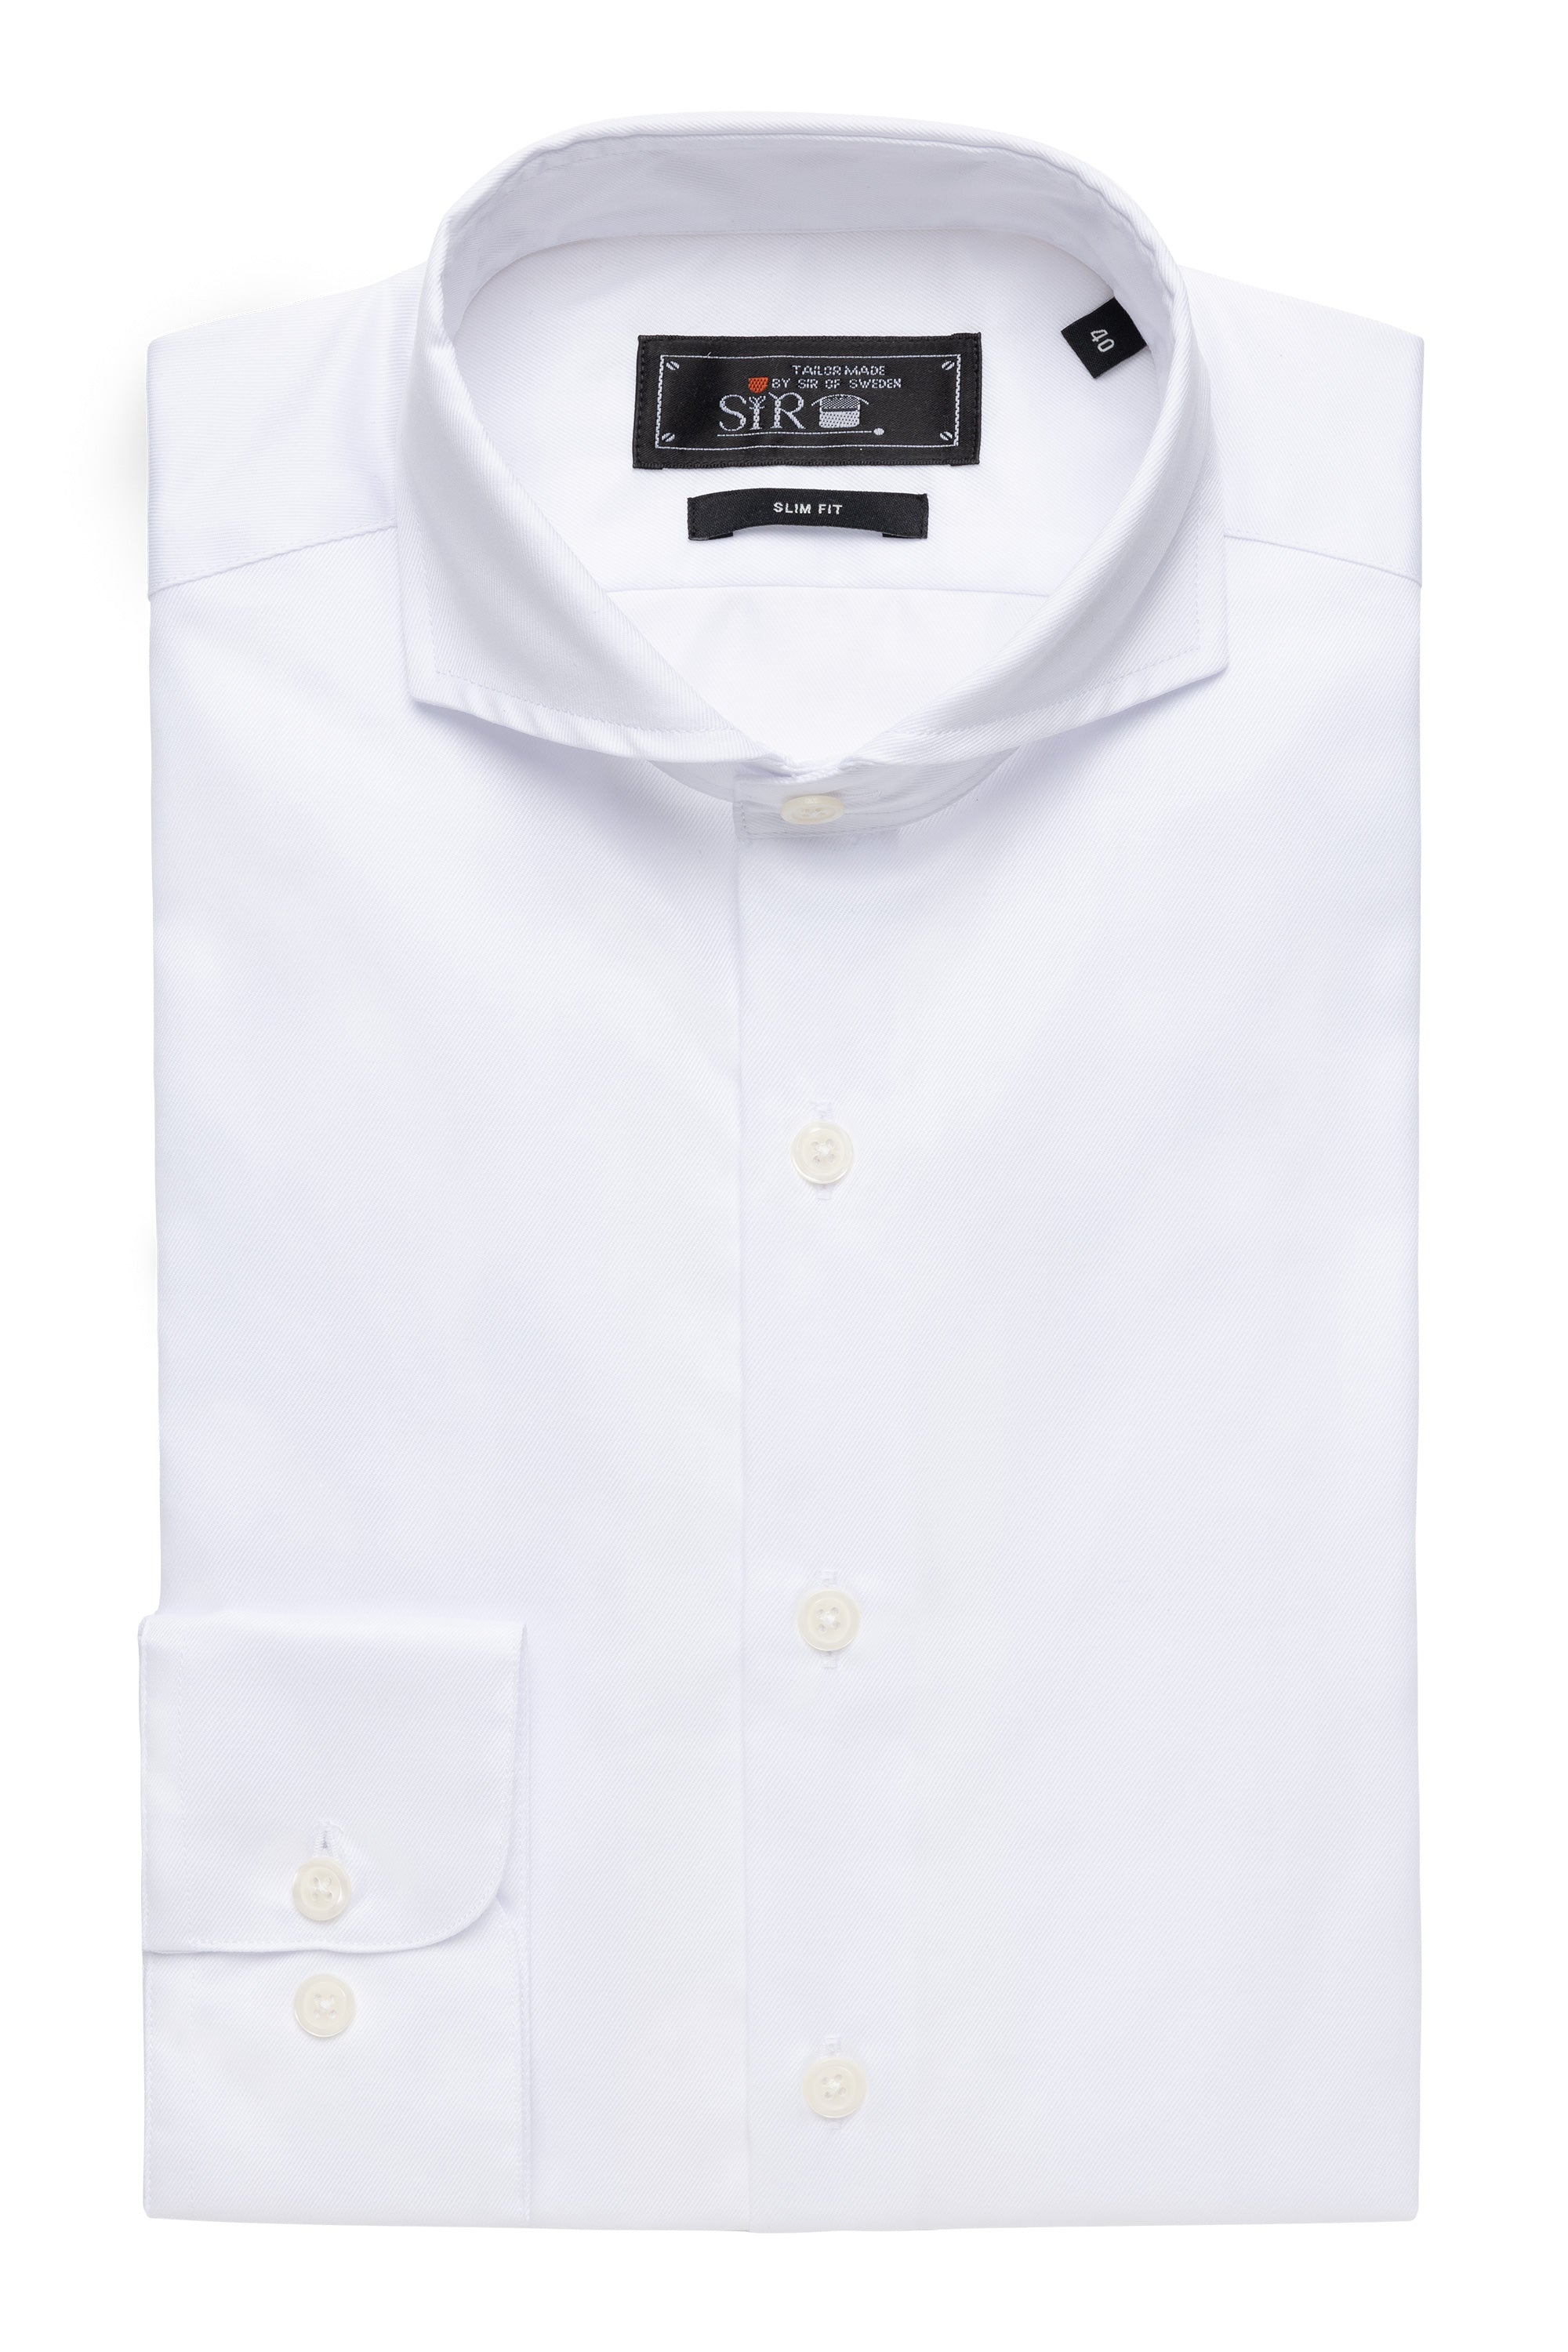 Agnelli White Shirt